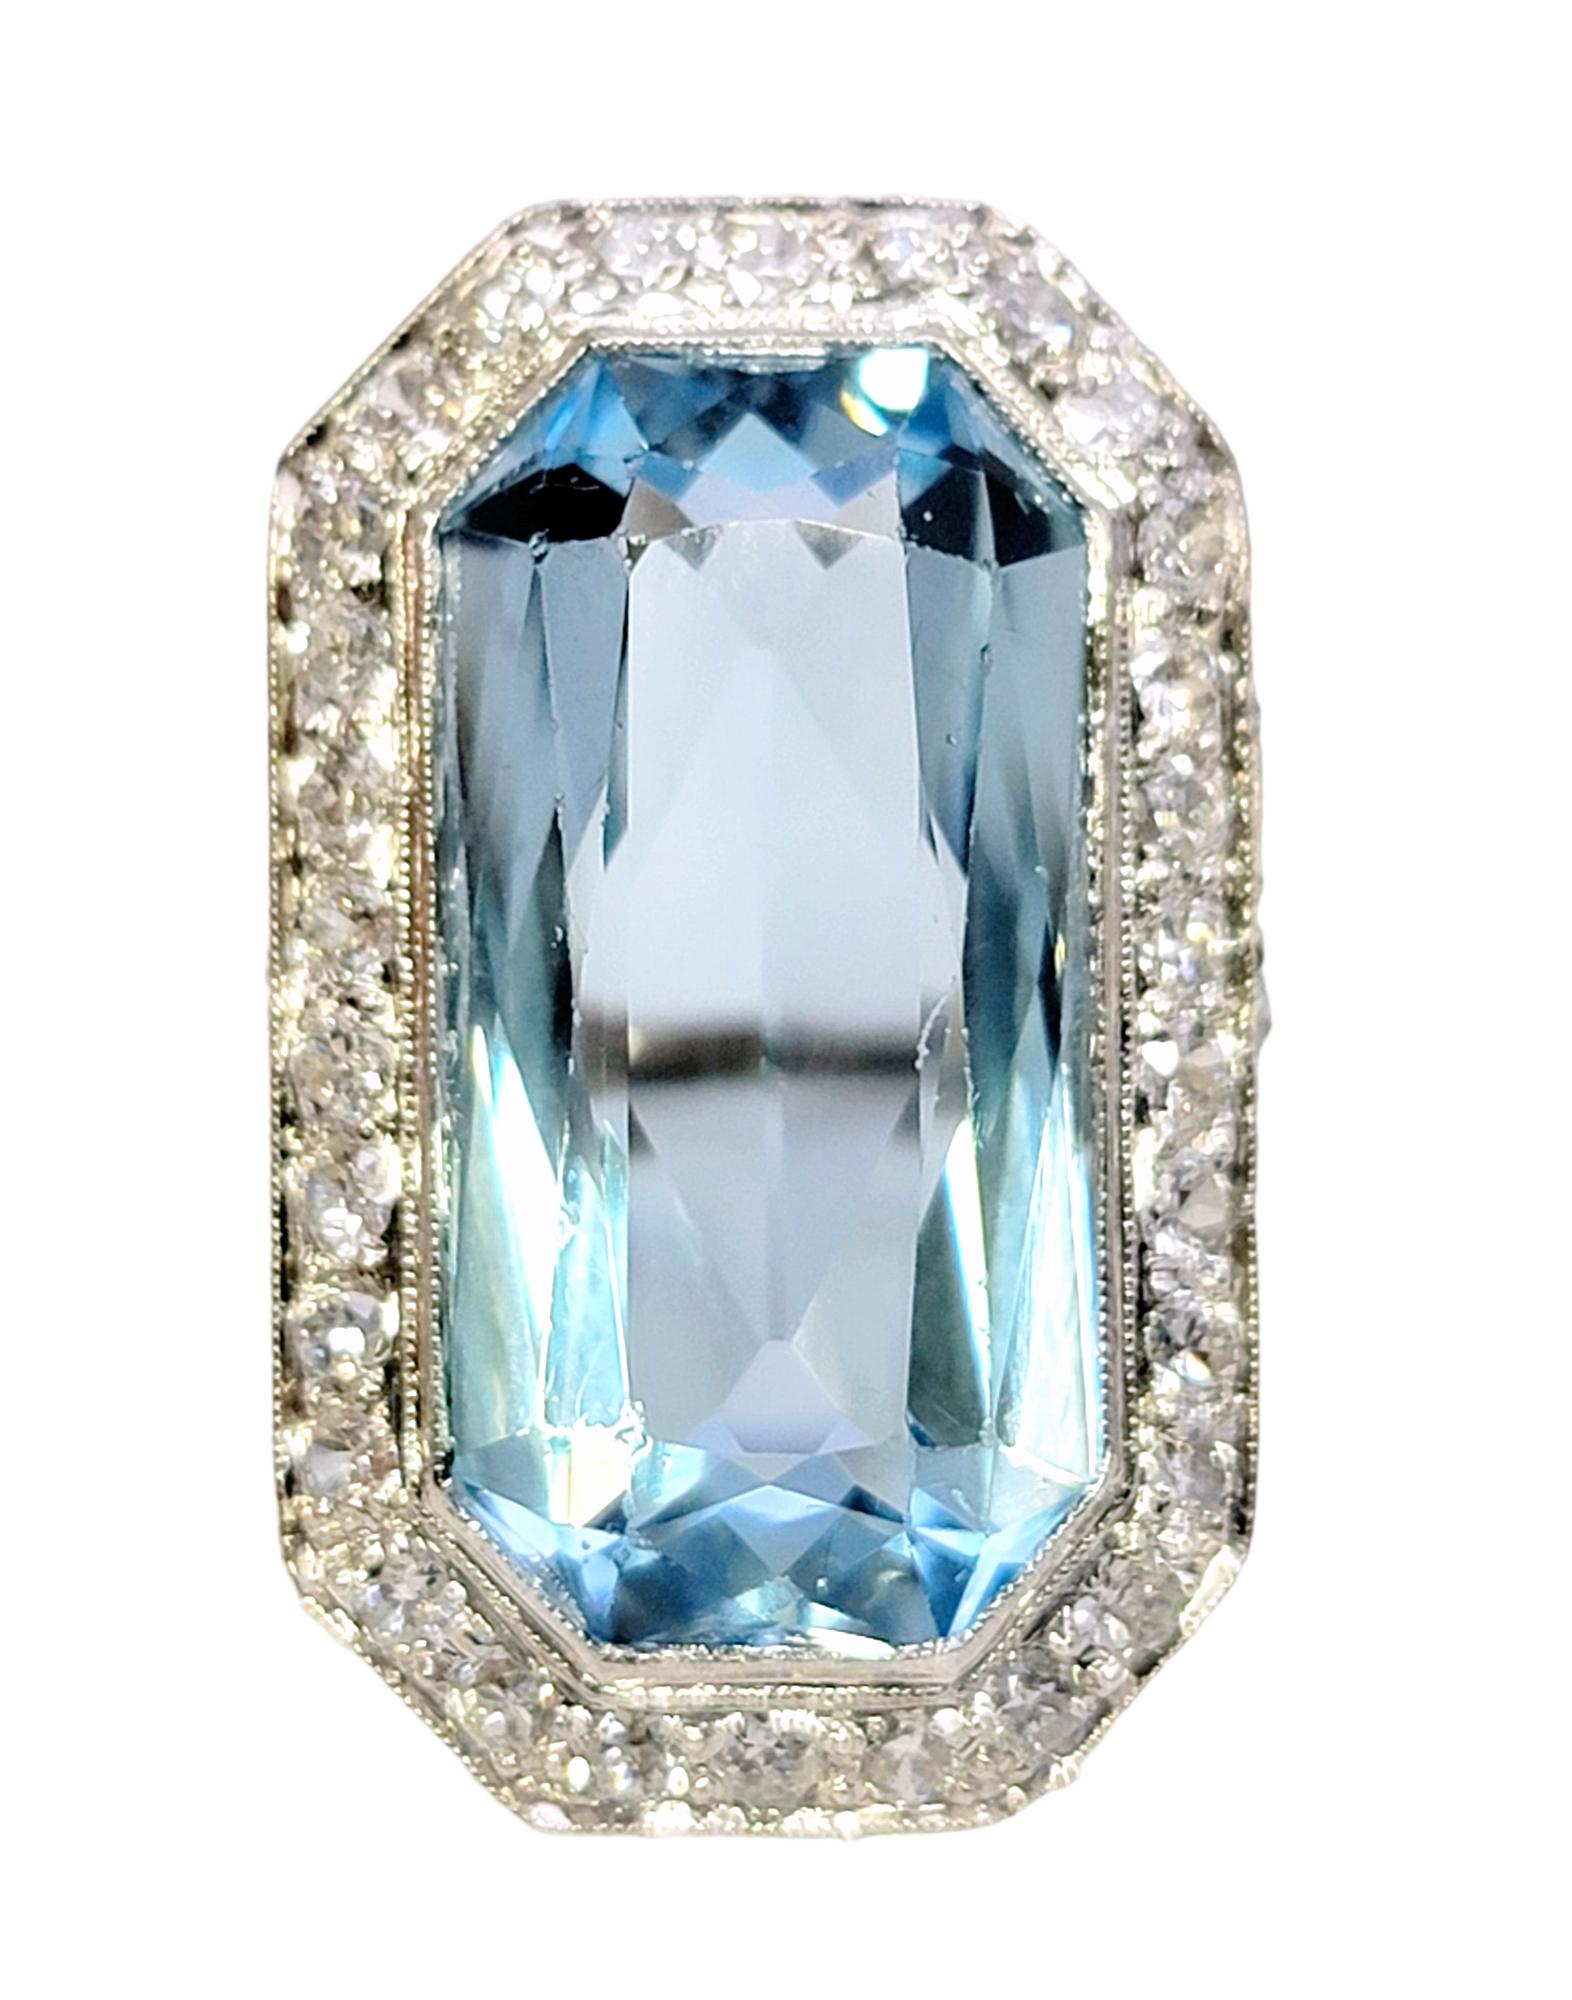 Women's Art Deco 1920s Radiant Cut Aquamarine and Diamond Cocktail Ring in Platinum